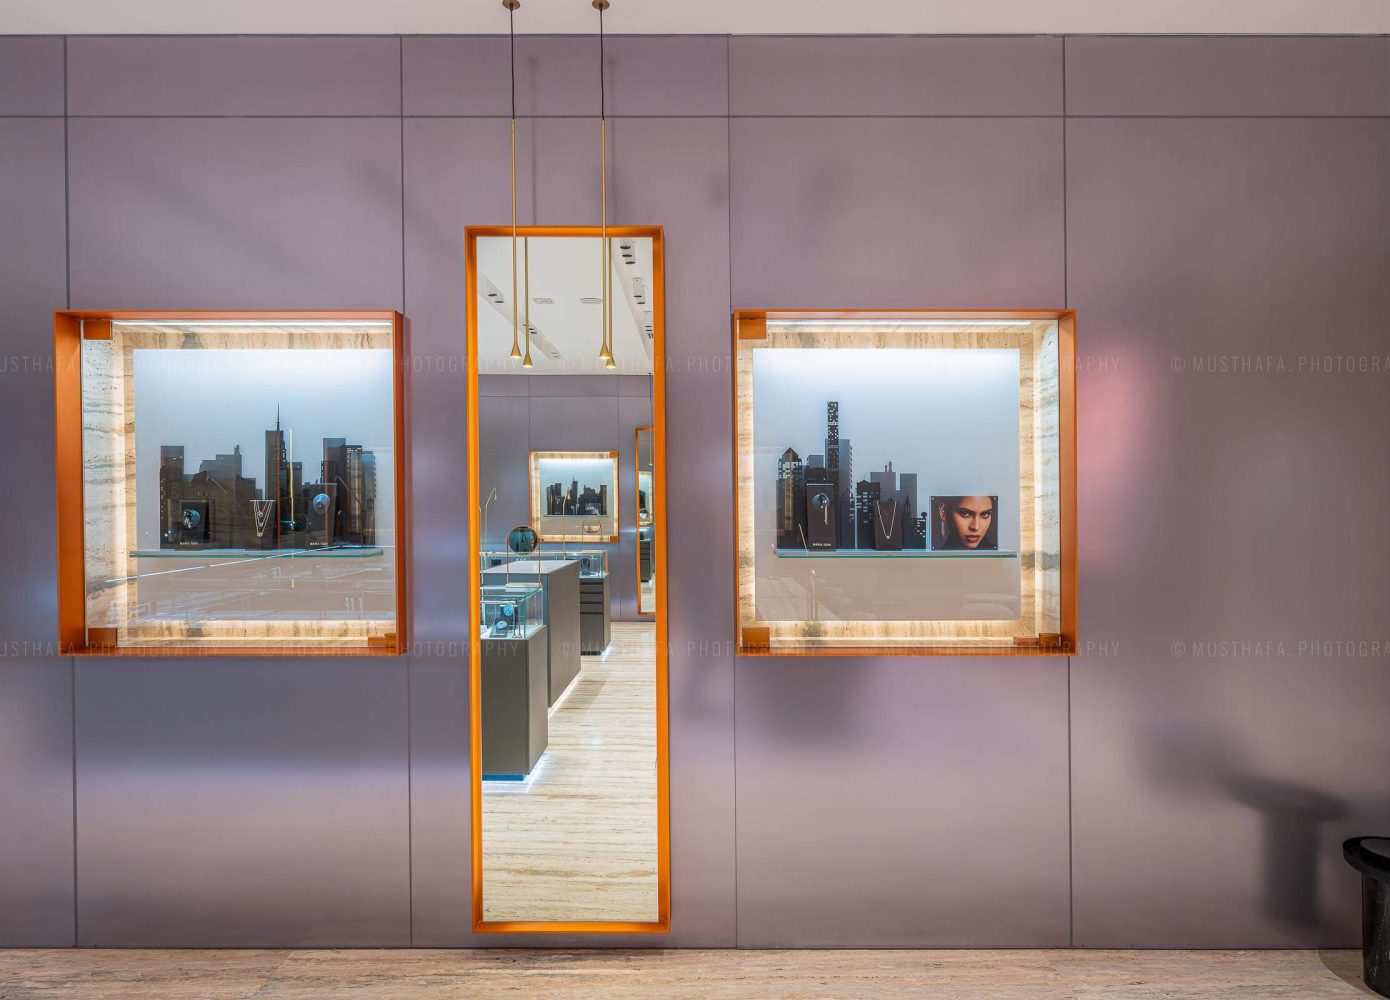 Maria Tash Avenues Mall Kuwait Architectural Interior Photographer in Dubai Abu Dhabi UAE Riyadh Retail Specialist 07